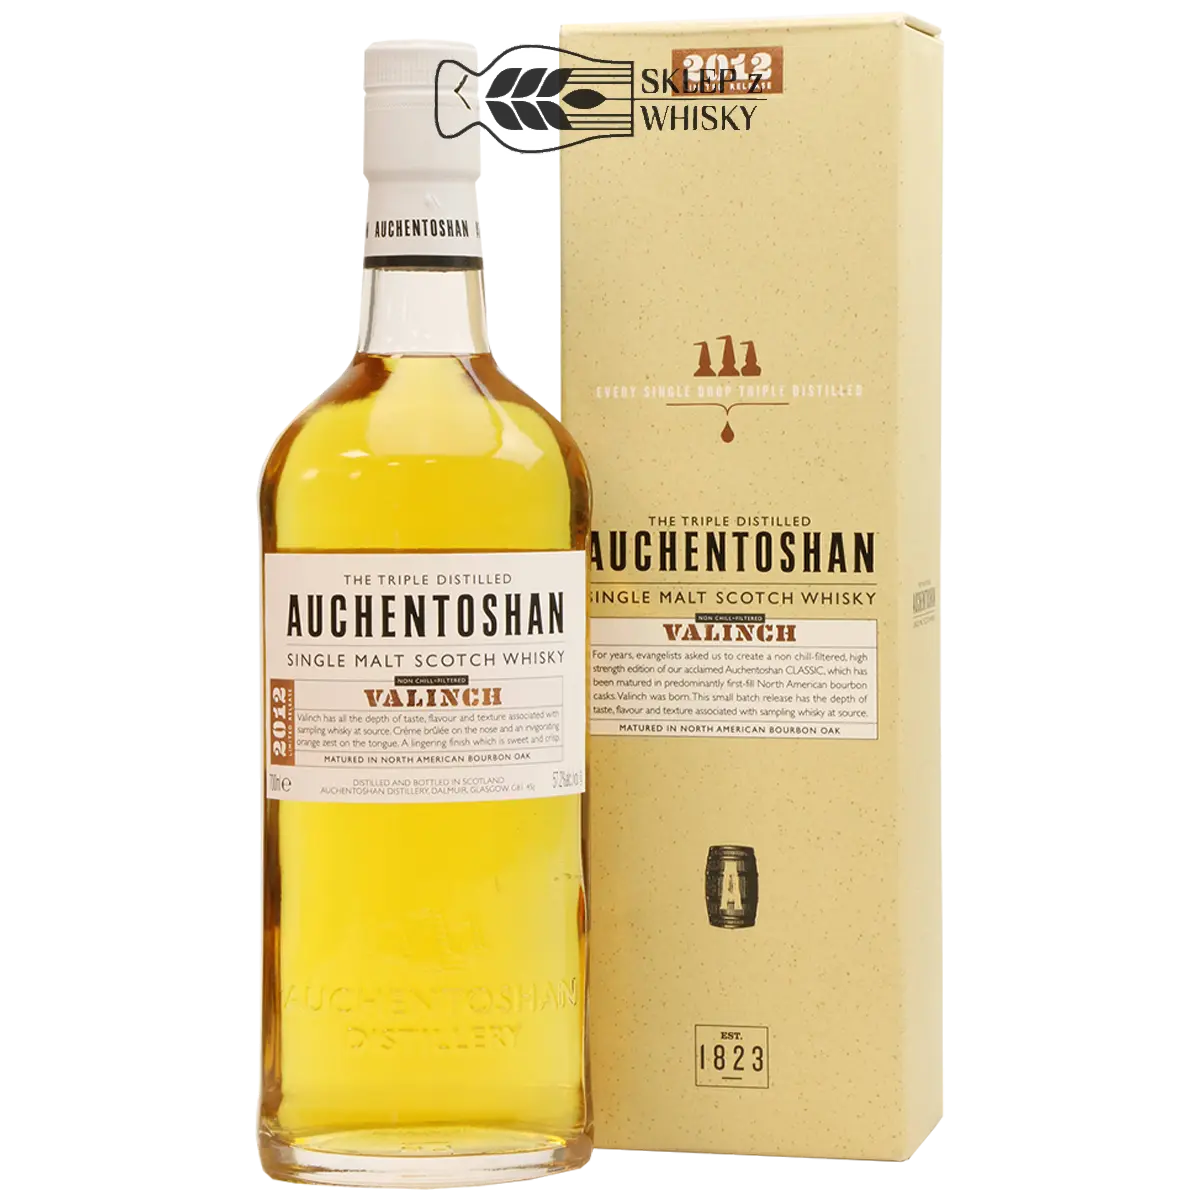 Auchentoshan Valinch 2012 - szkocka whisky single malt z regionu Lowlands, 700 ml, w pudełku